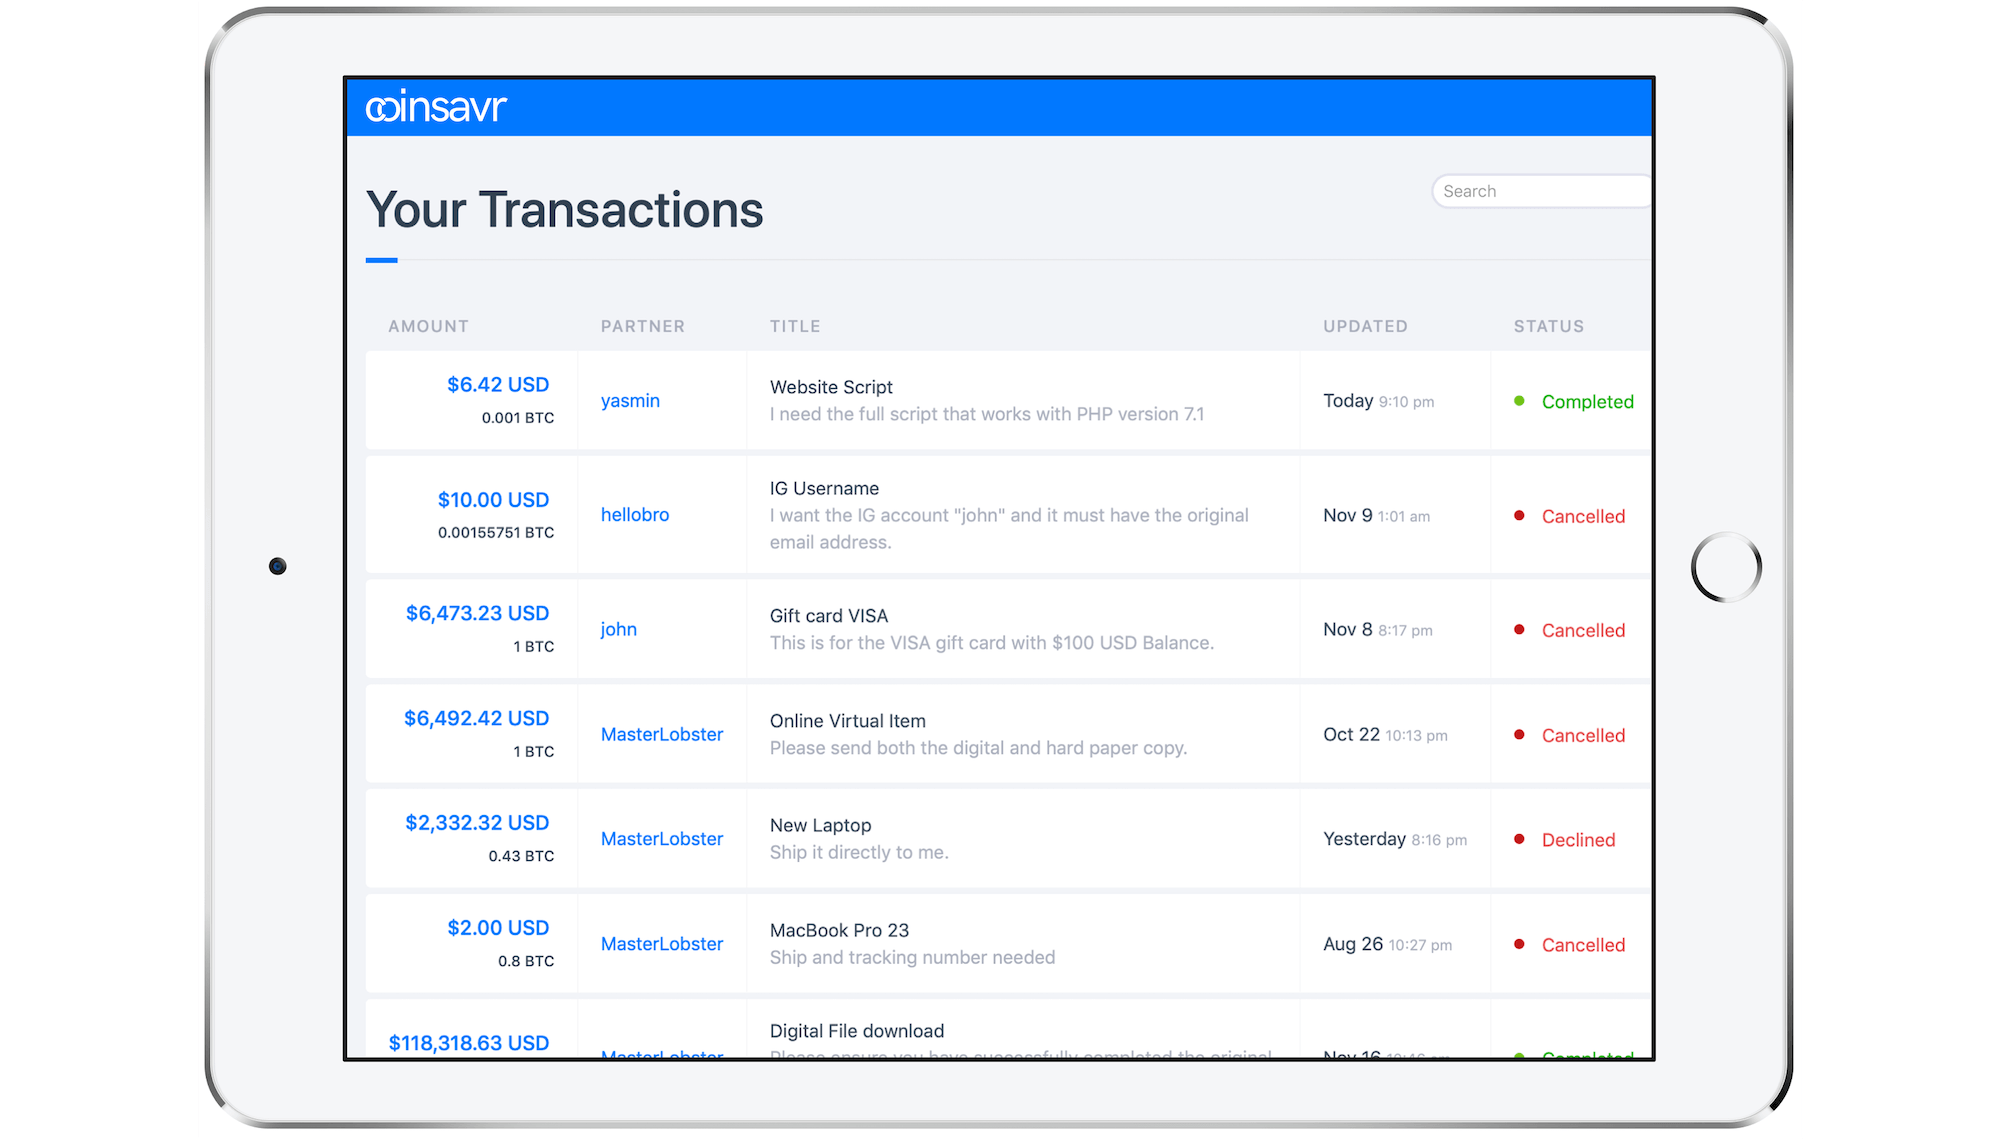 coinsavr transactions